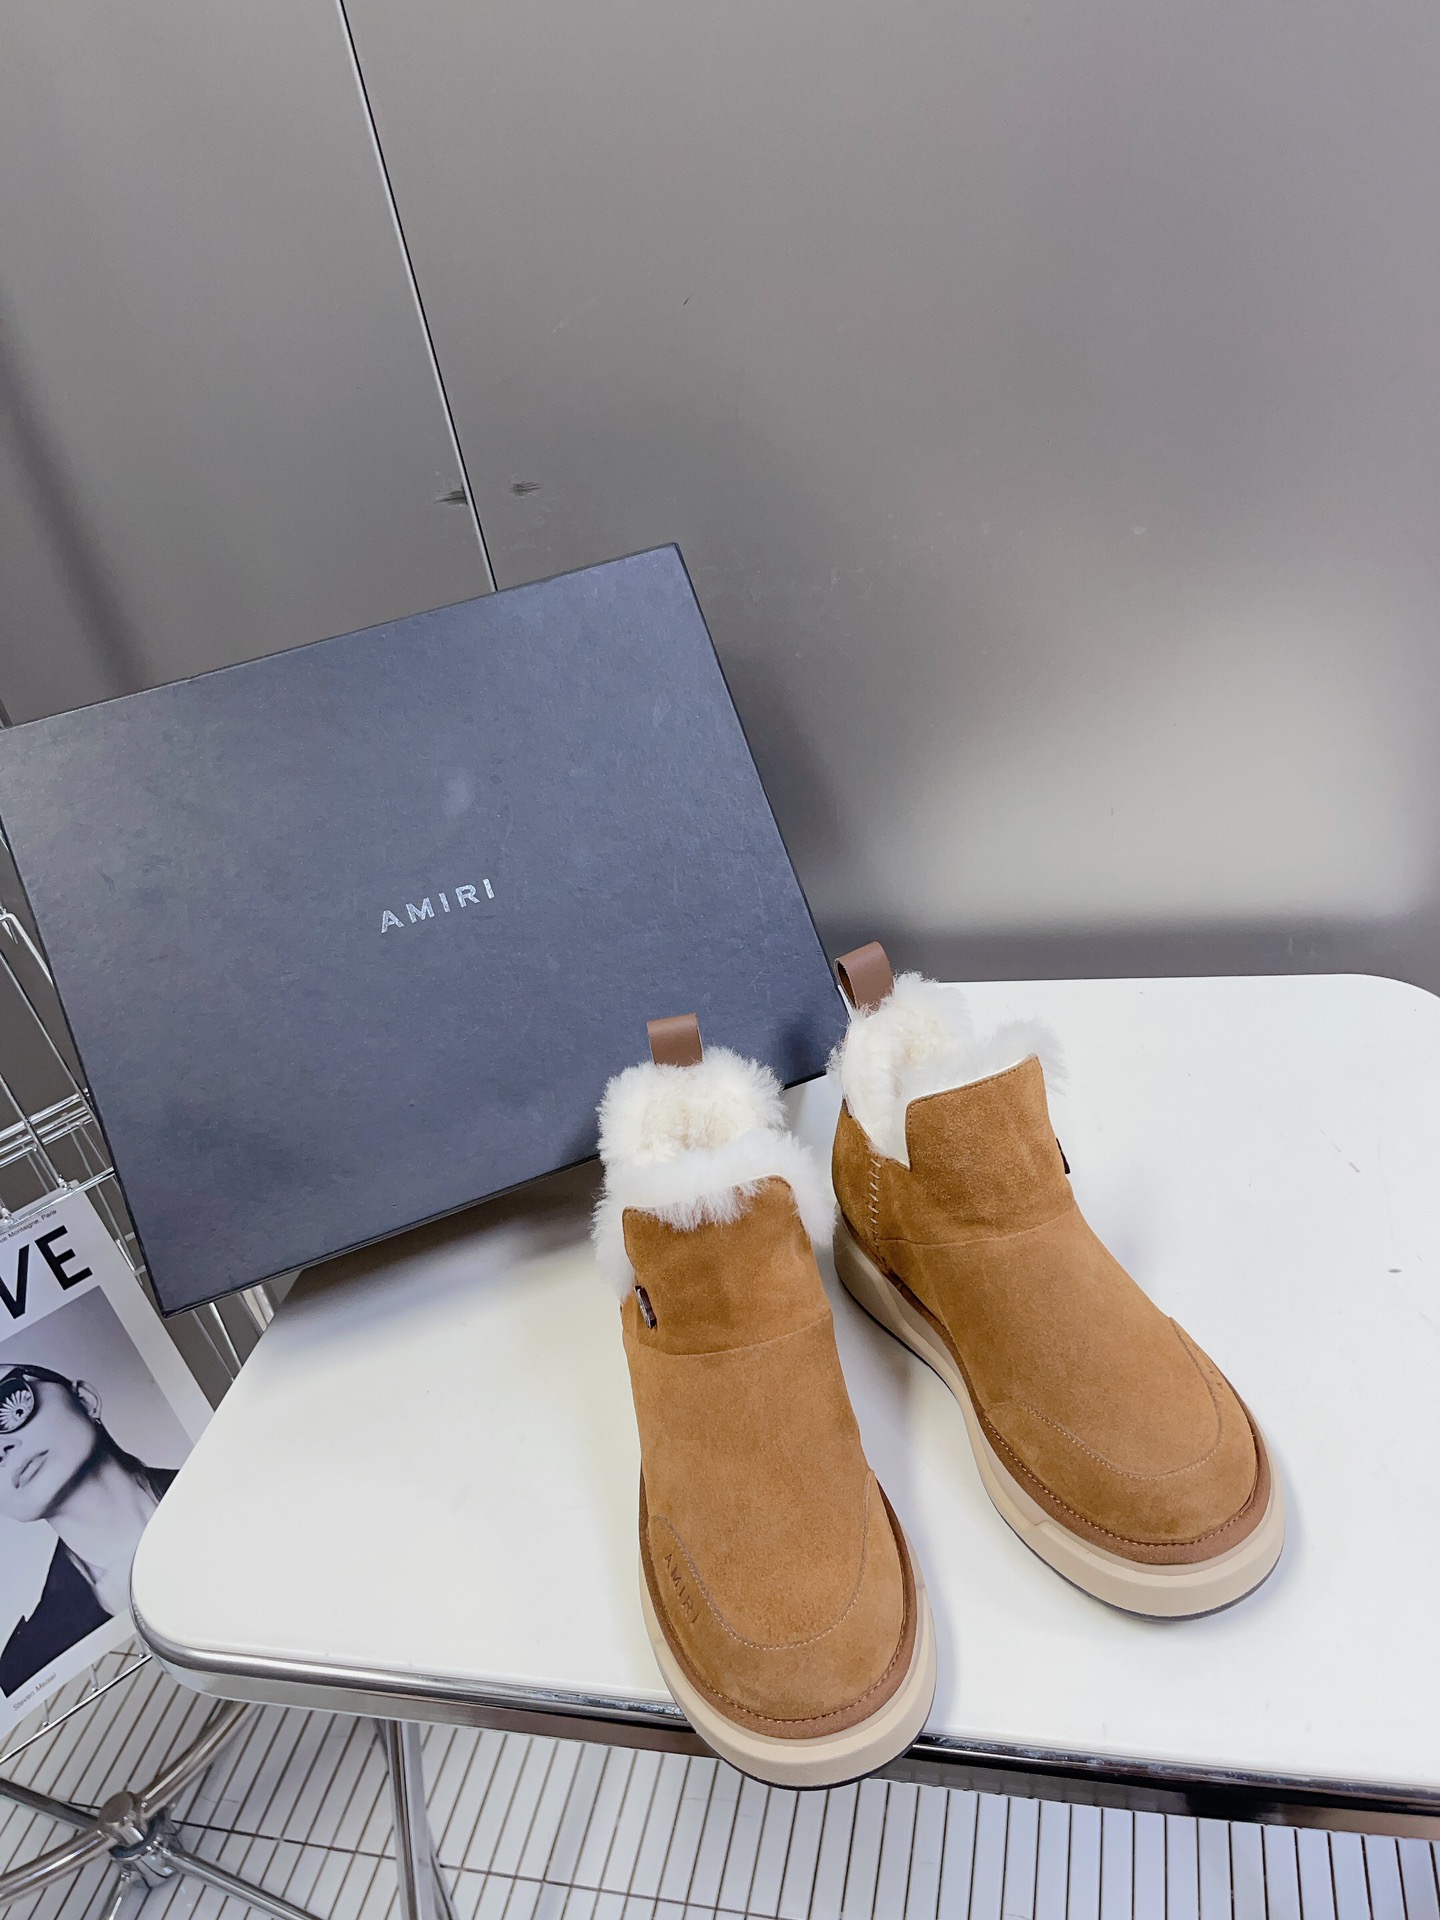 AMIRI新款毛毛鞋是来自美国的潮流品牌迅速走红国际时装界的一个年轻品牌所致力打造的风格毛鞋的保暖性结构